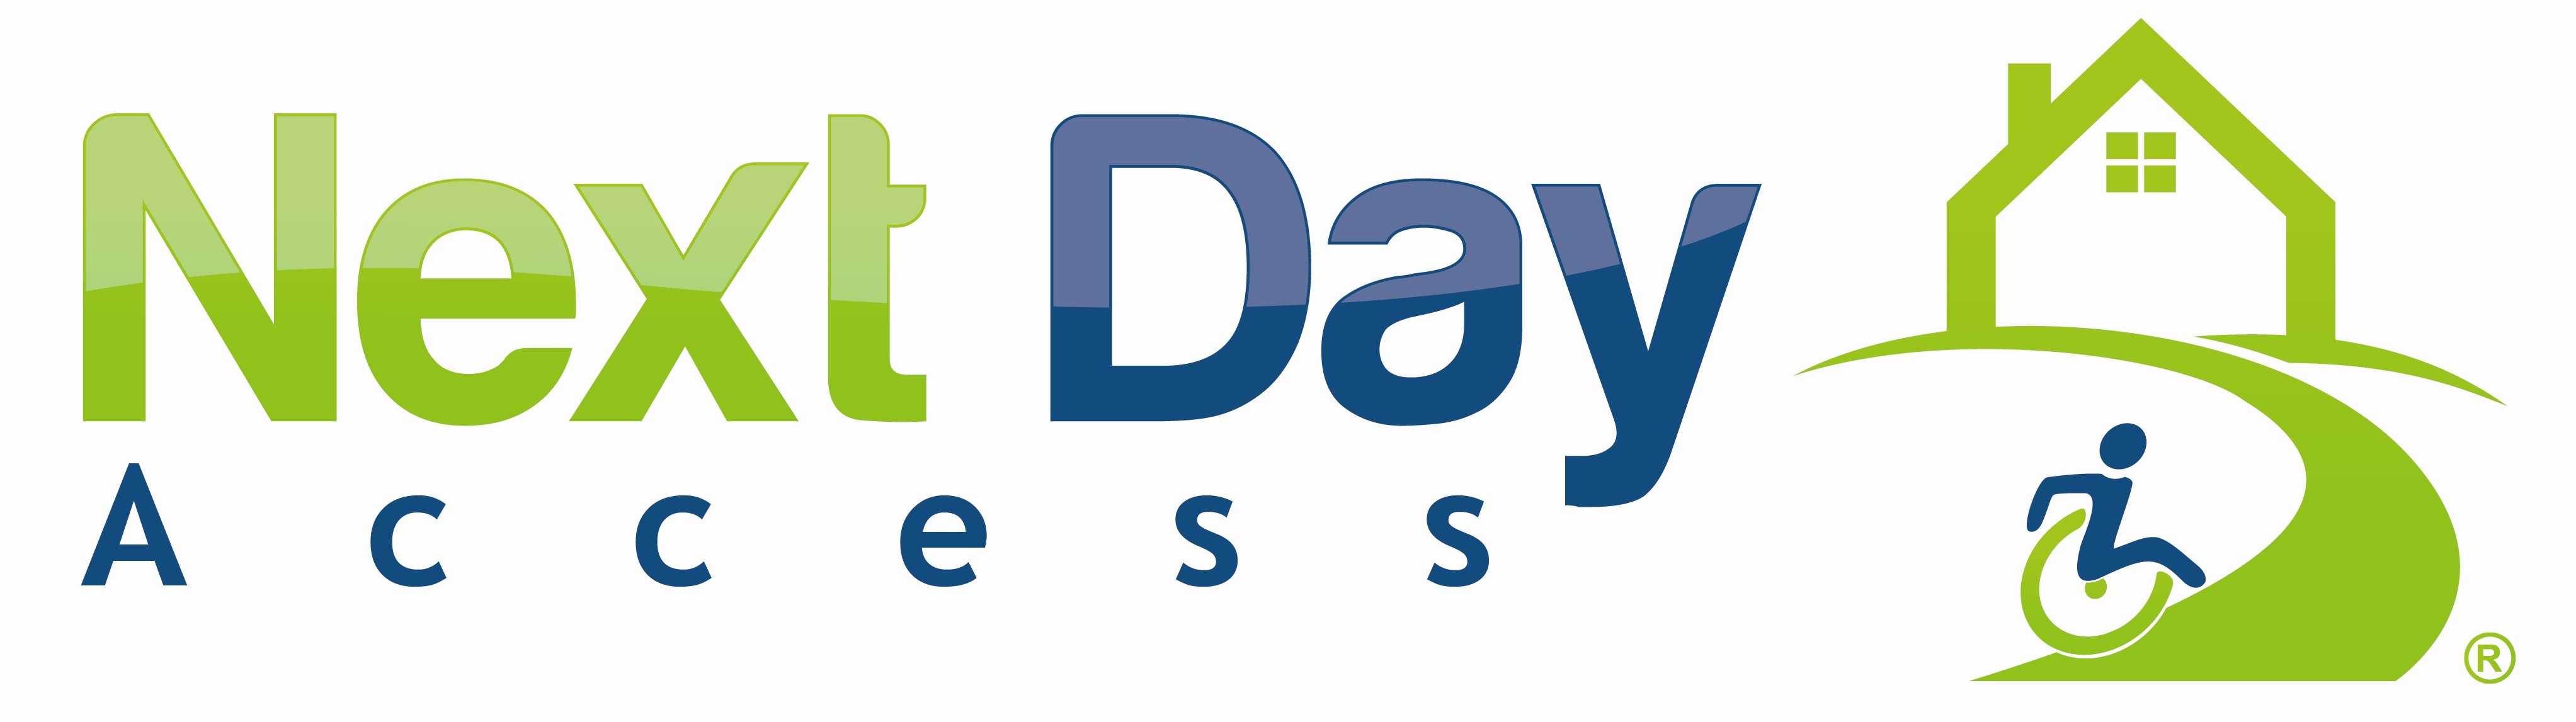 Next Day Access Logo